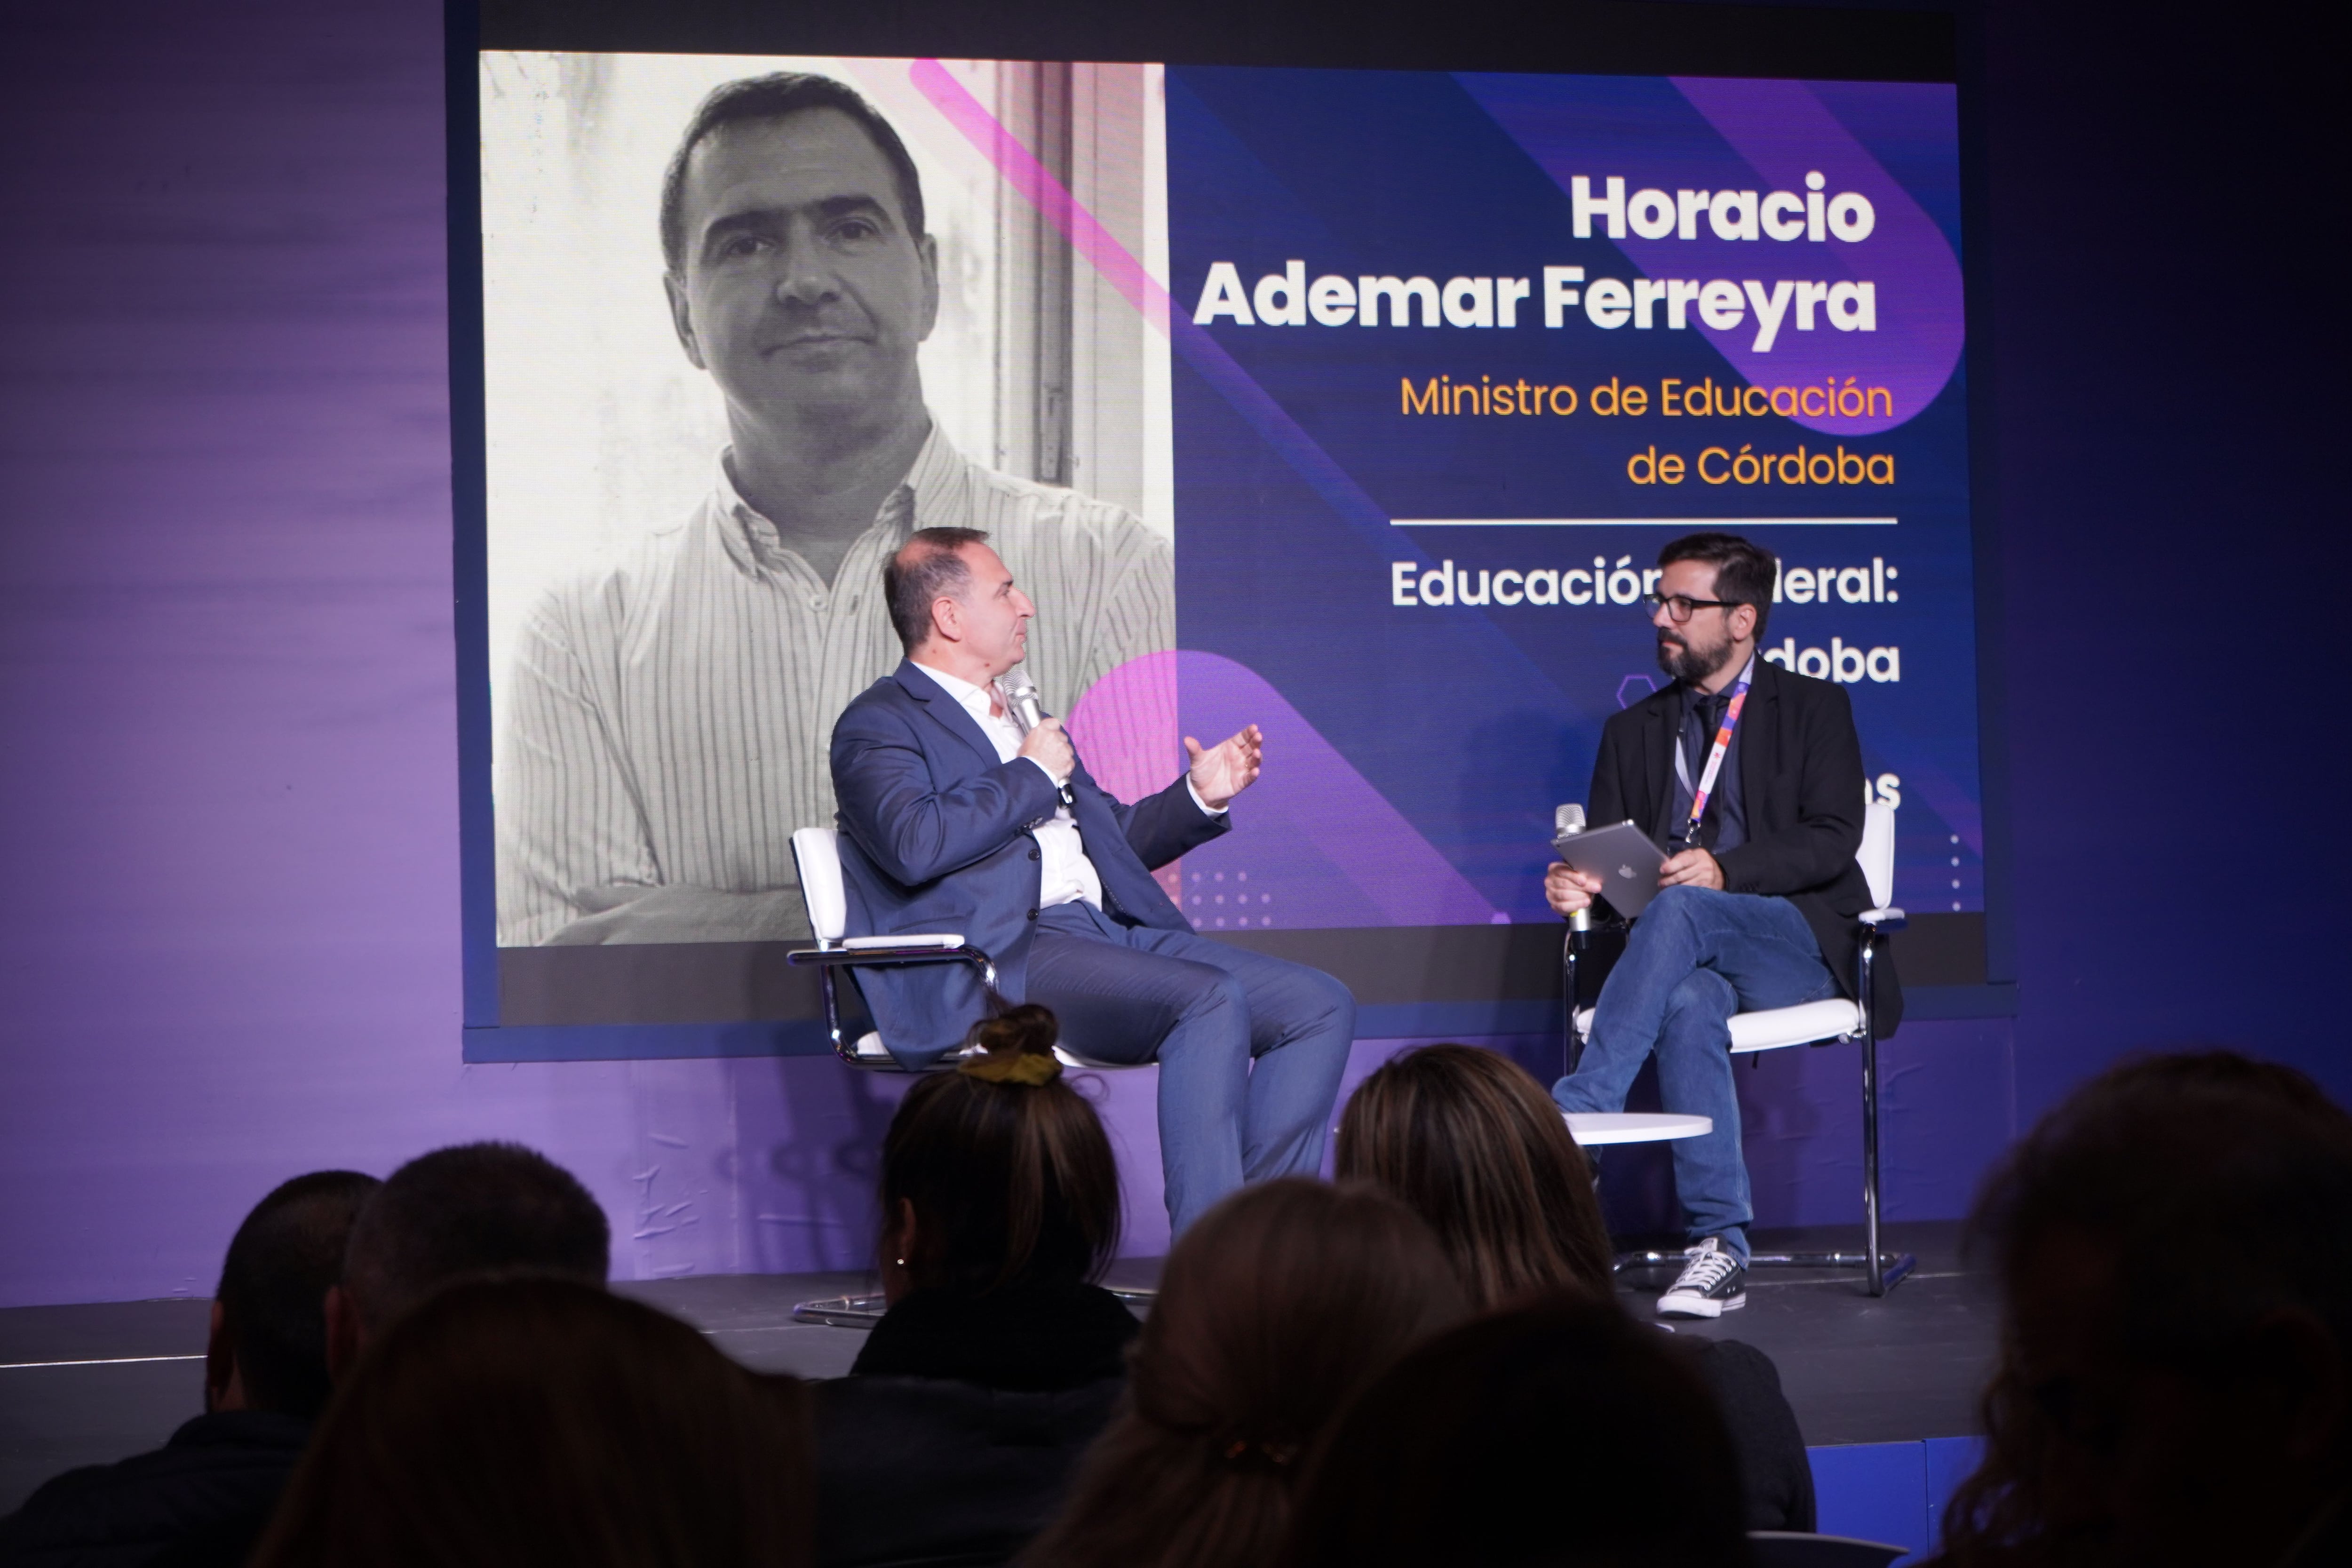 Horacio Ademar Ferreyra conversando sobre la articulación de la secundaria con la universidad (Agustín Brashich/Ticmas)